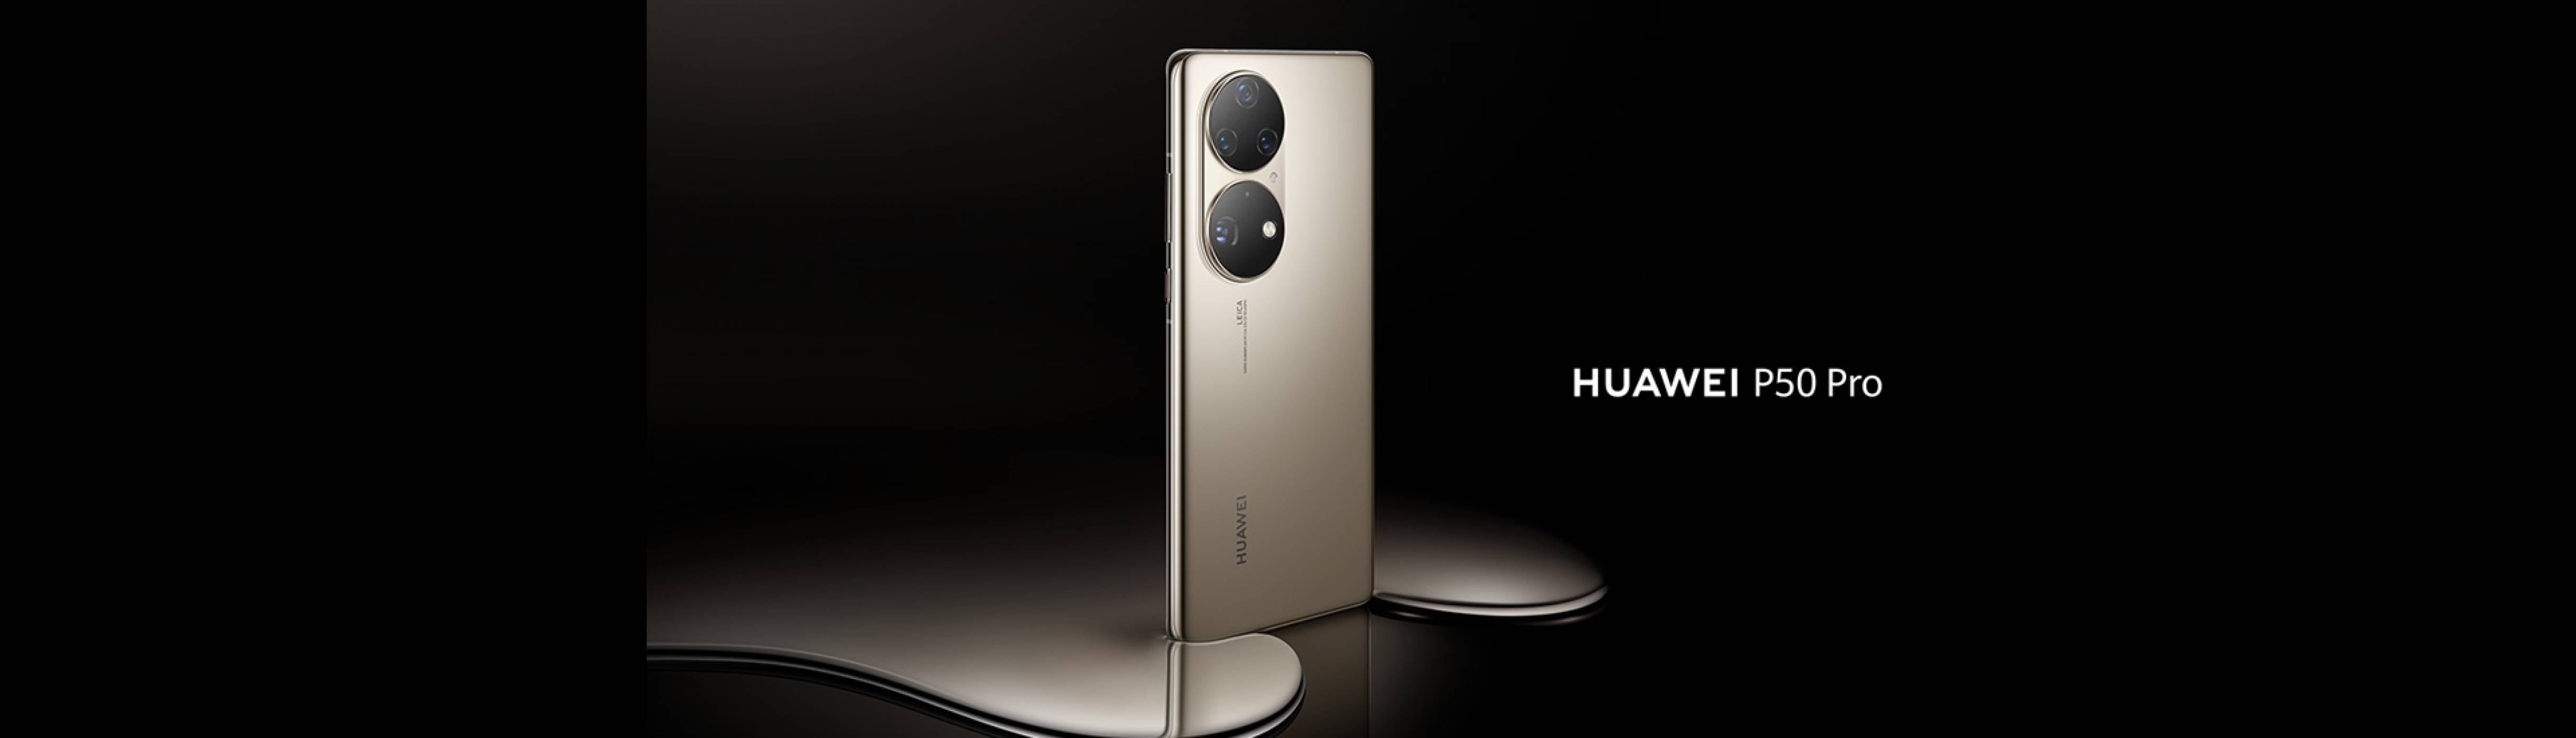 HUAWEI представя лидера в мобилната фотография HUAWEI P50 Pro и иновативния сгъваем HUAWEI P50 Pocket